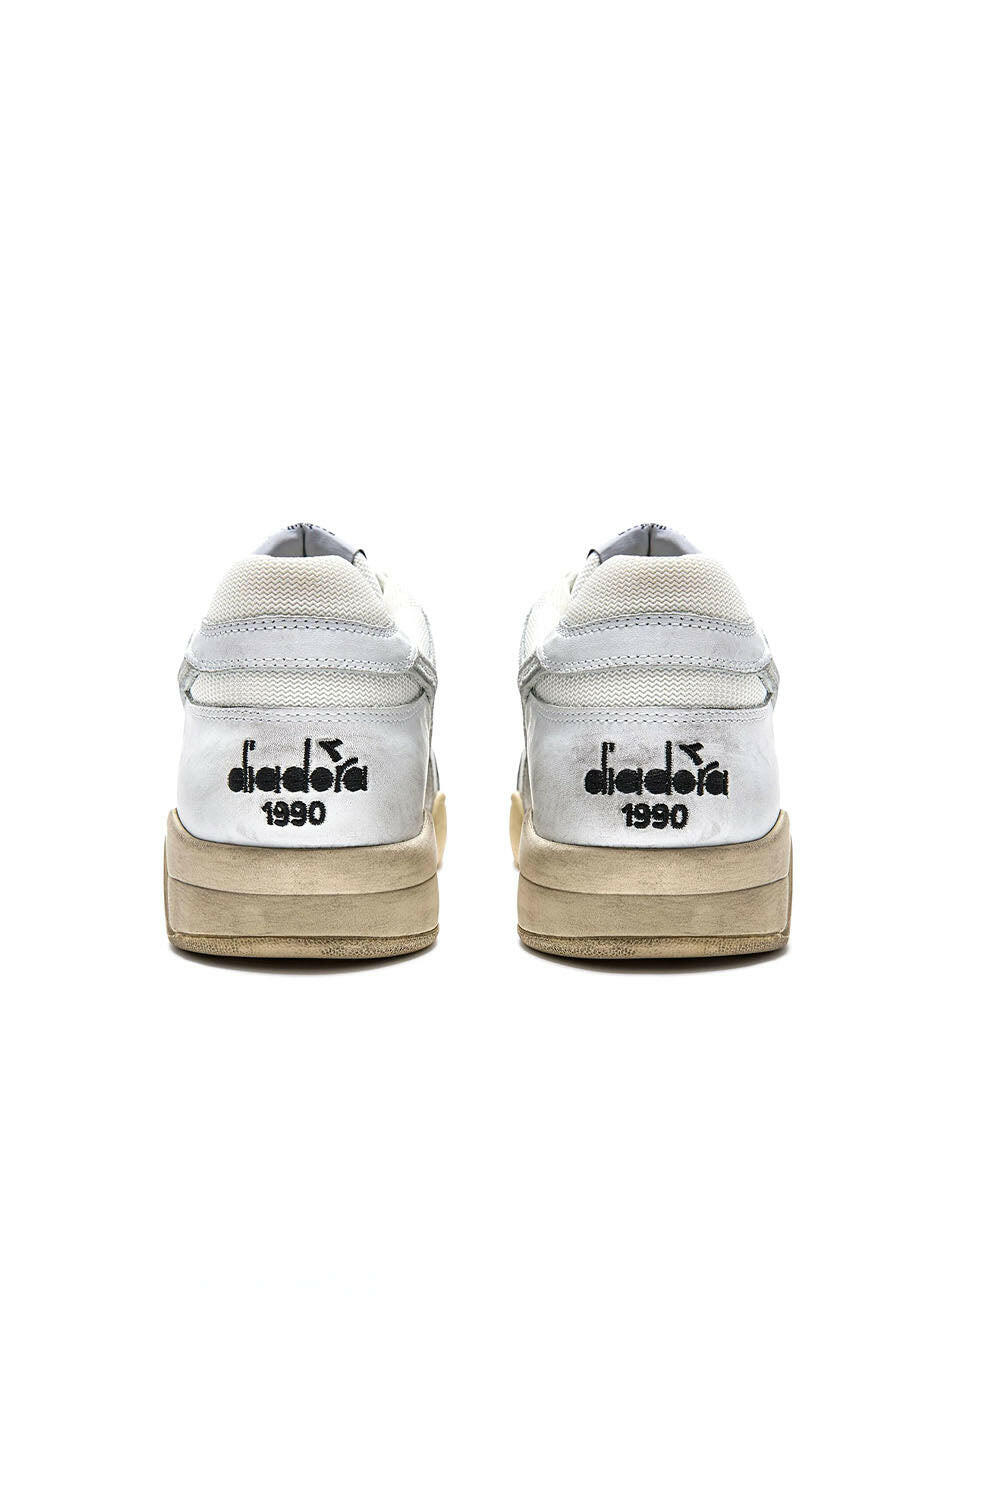  Diadora Sneaker B.560 Used Bianco Woman - 3